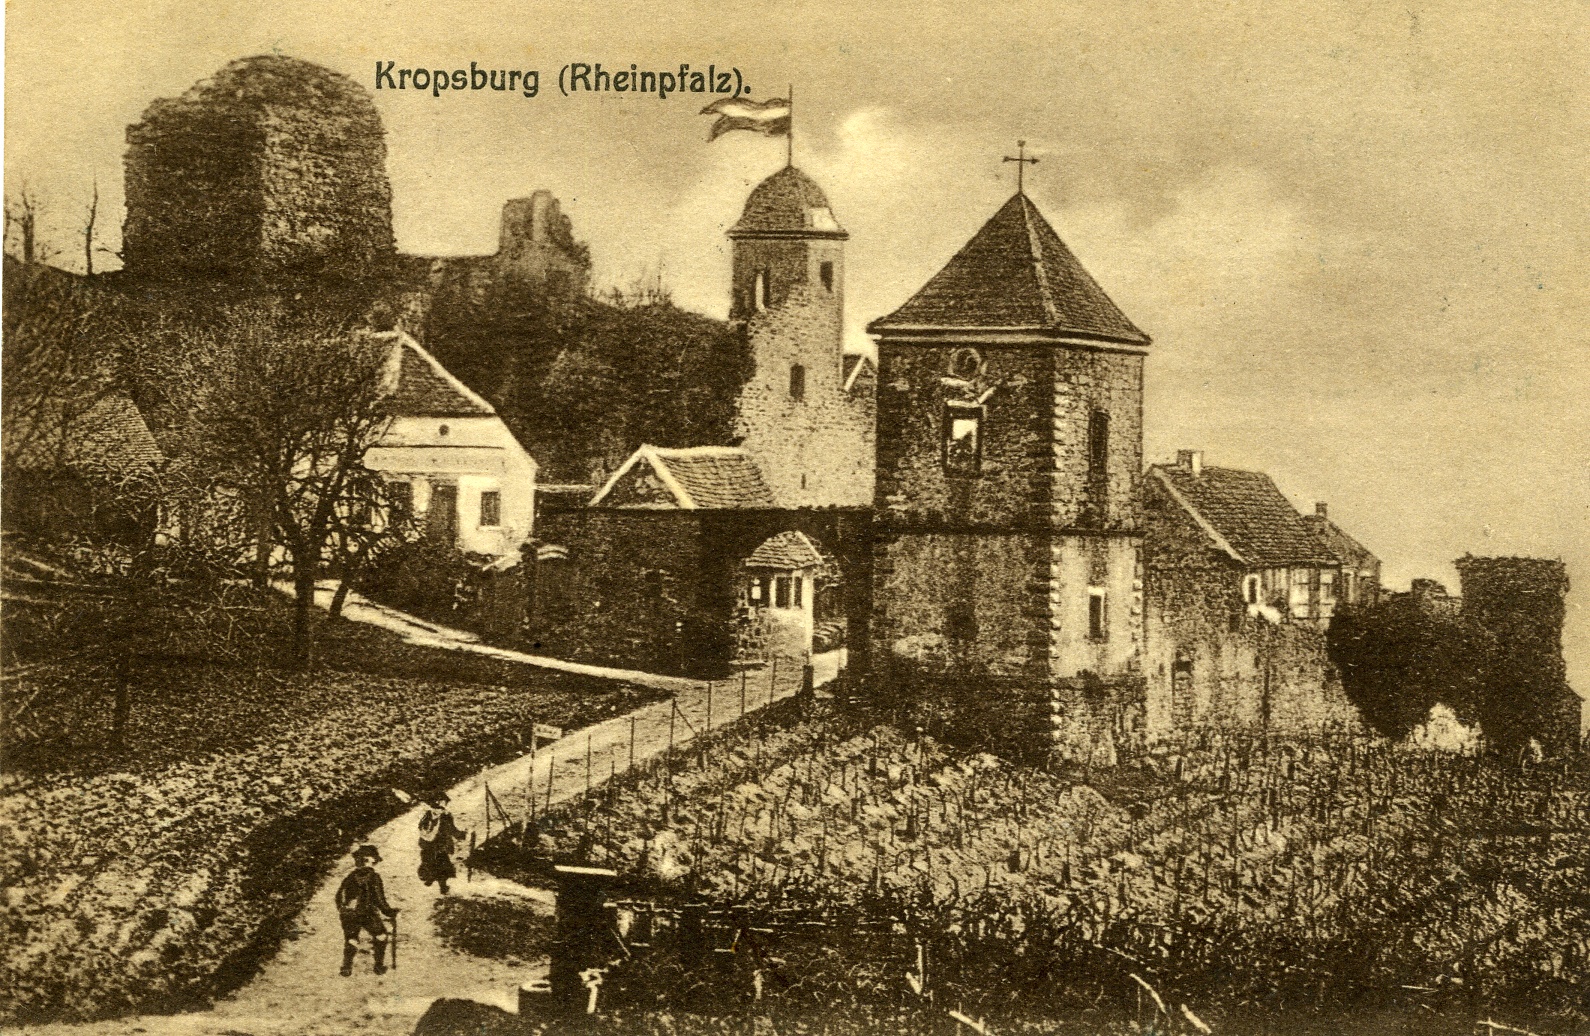 Postkarte 1925 (Historisches Museum der Pfalz, Speyer CC BY)